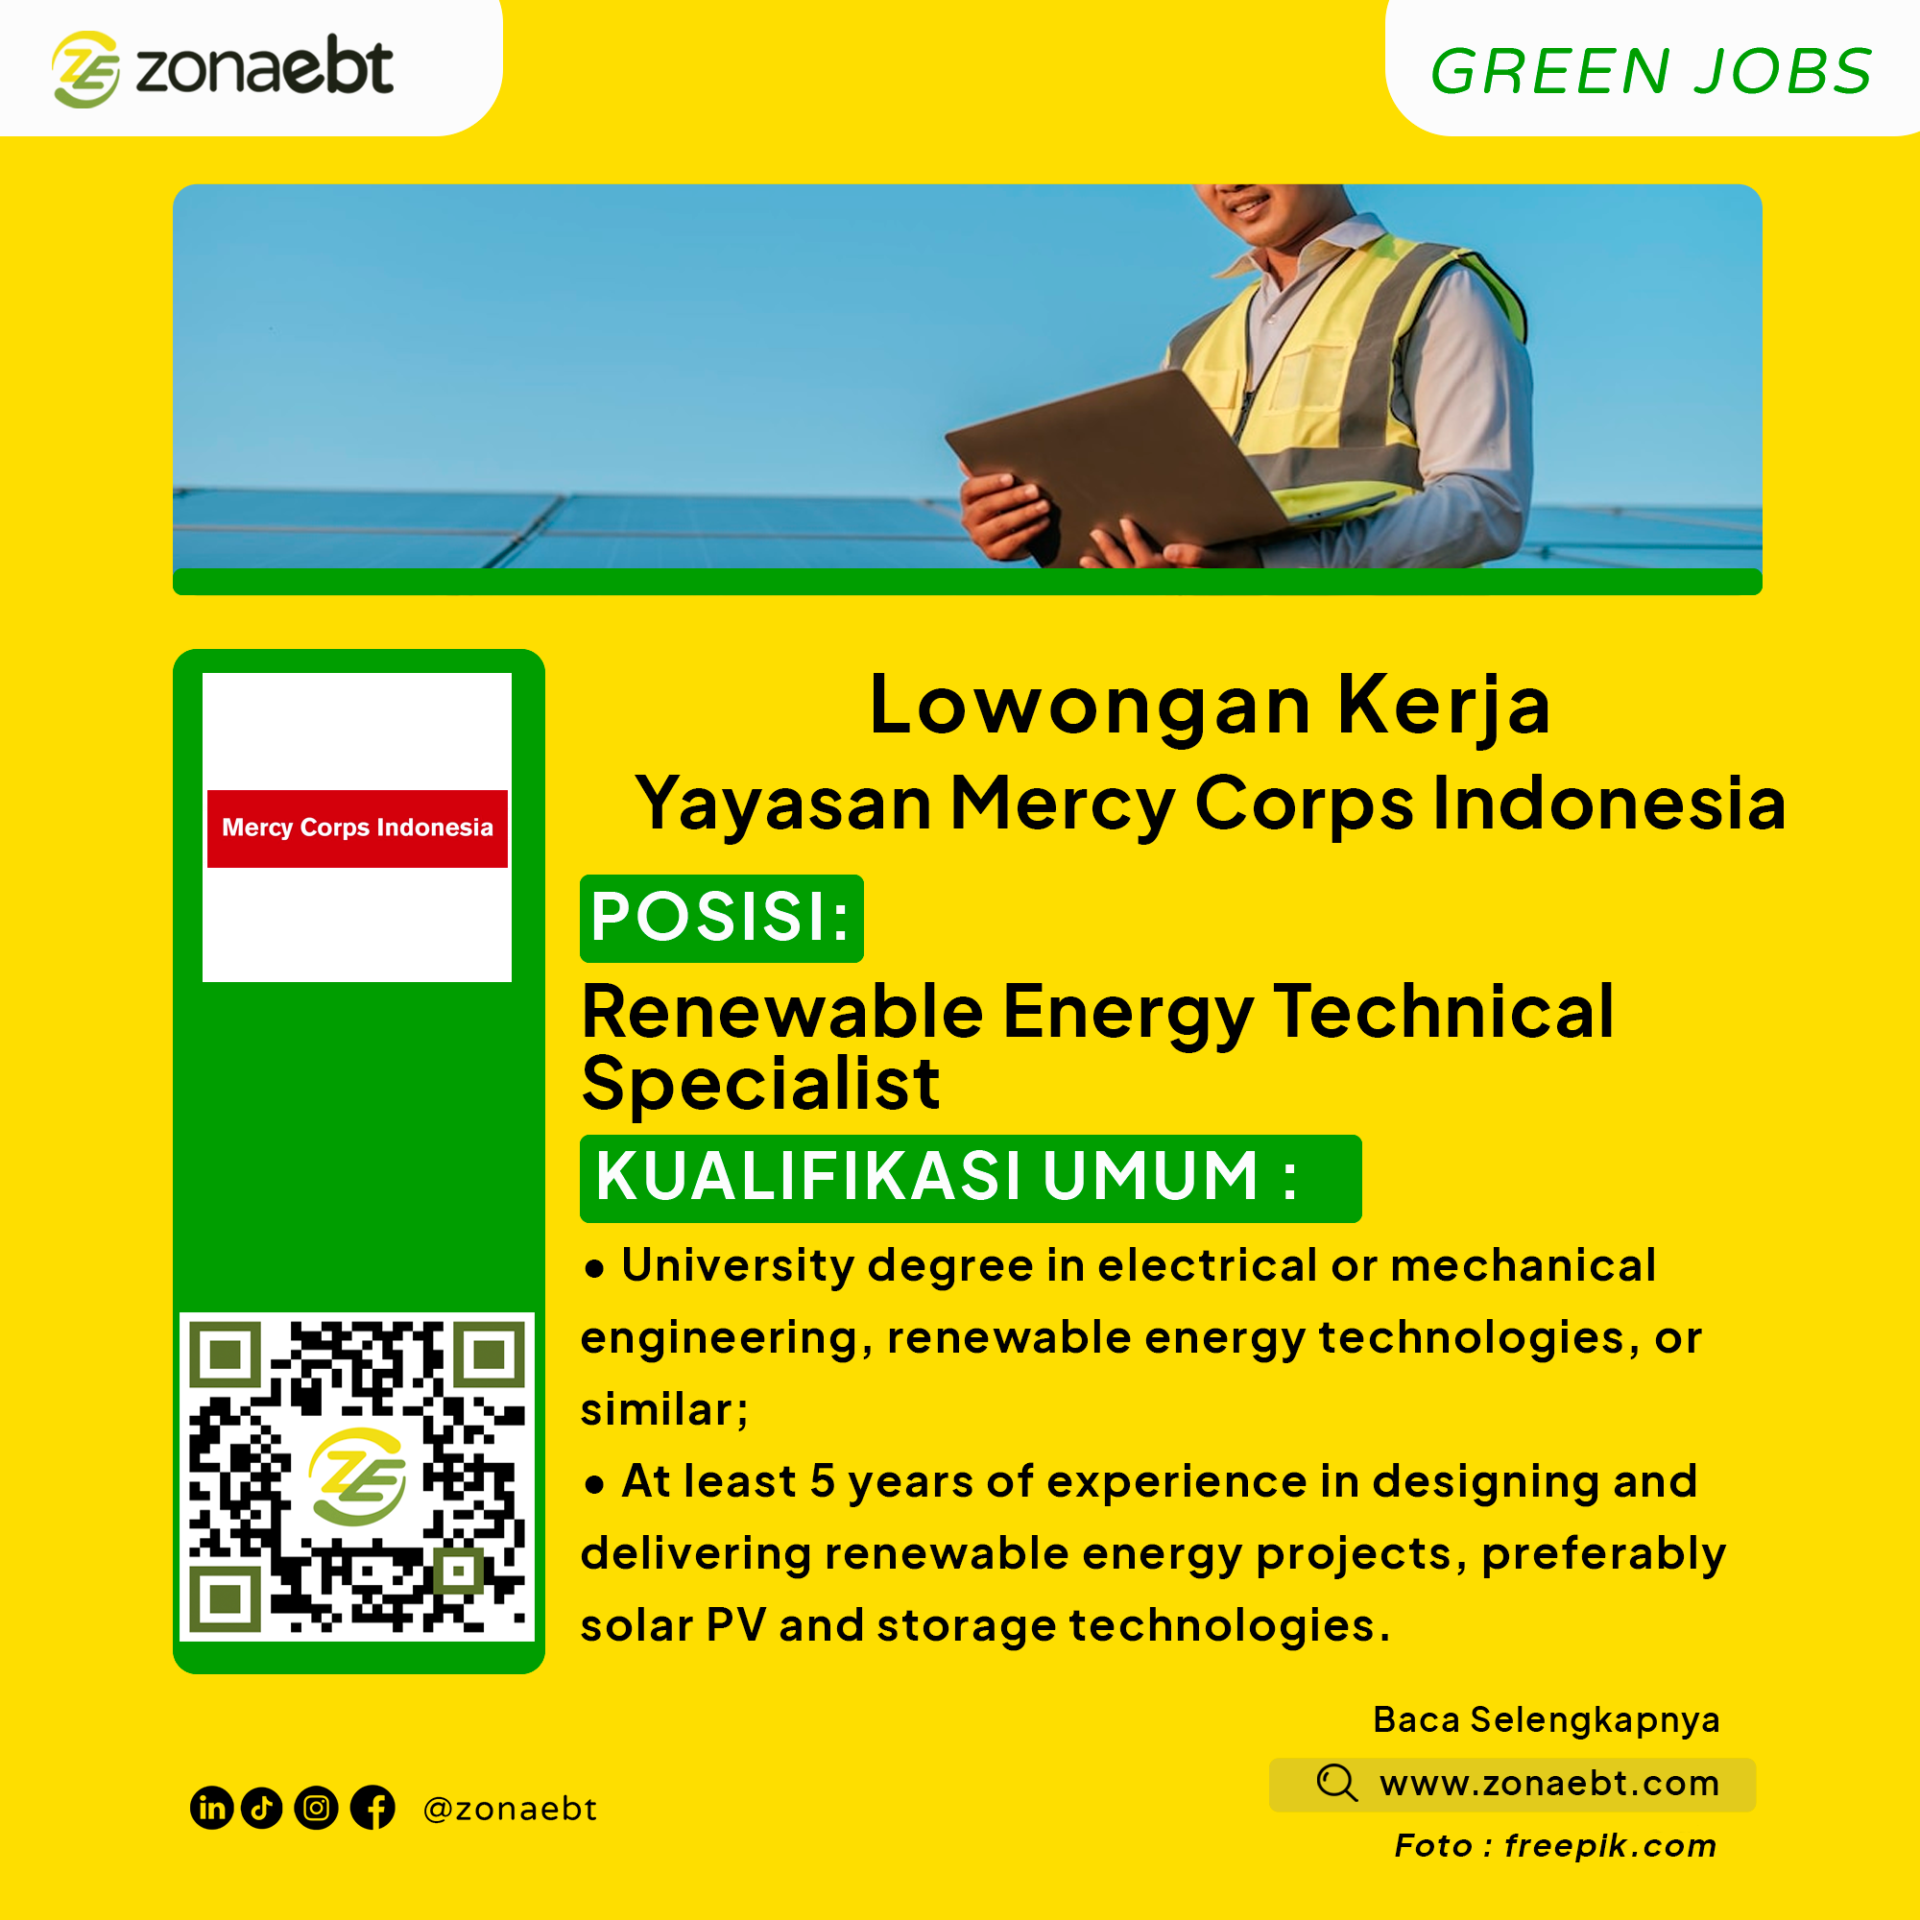 Renewable Energy Technical SpecialistGreen Jobs zonaebt.com